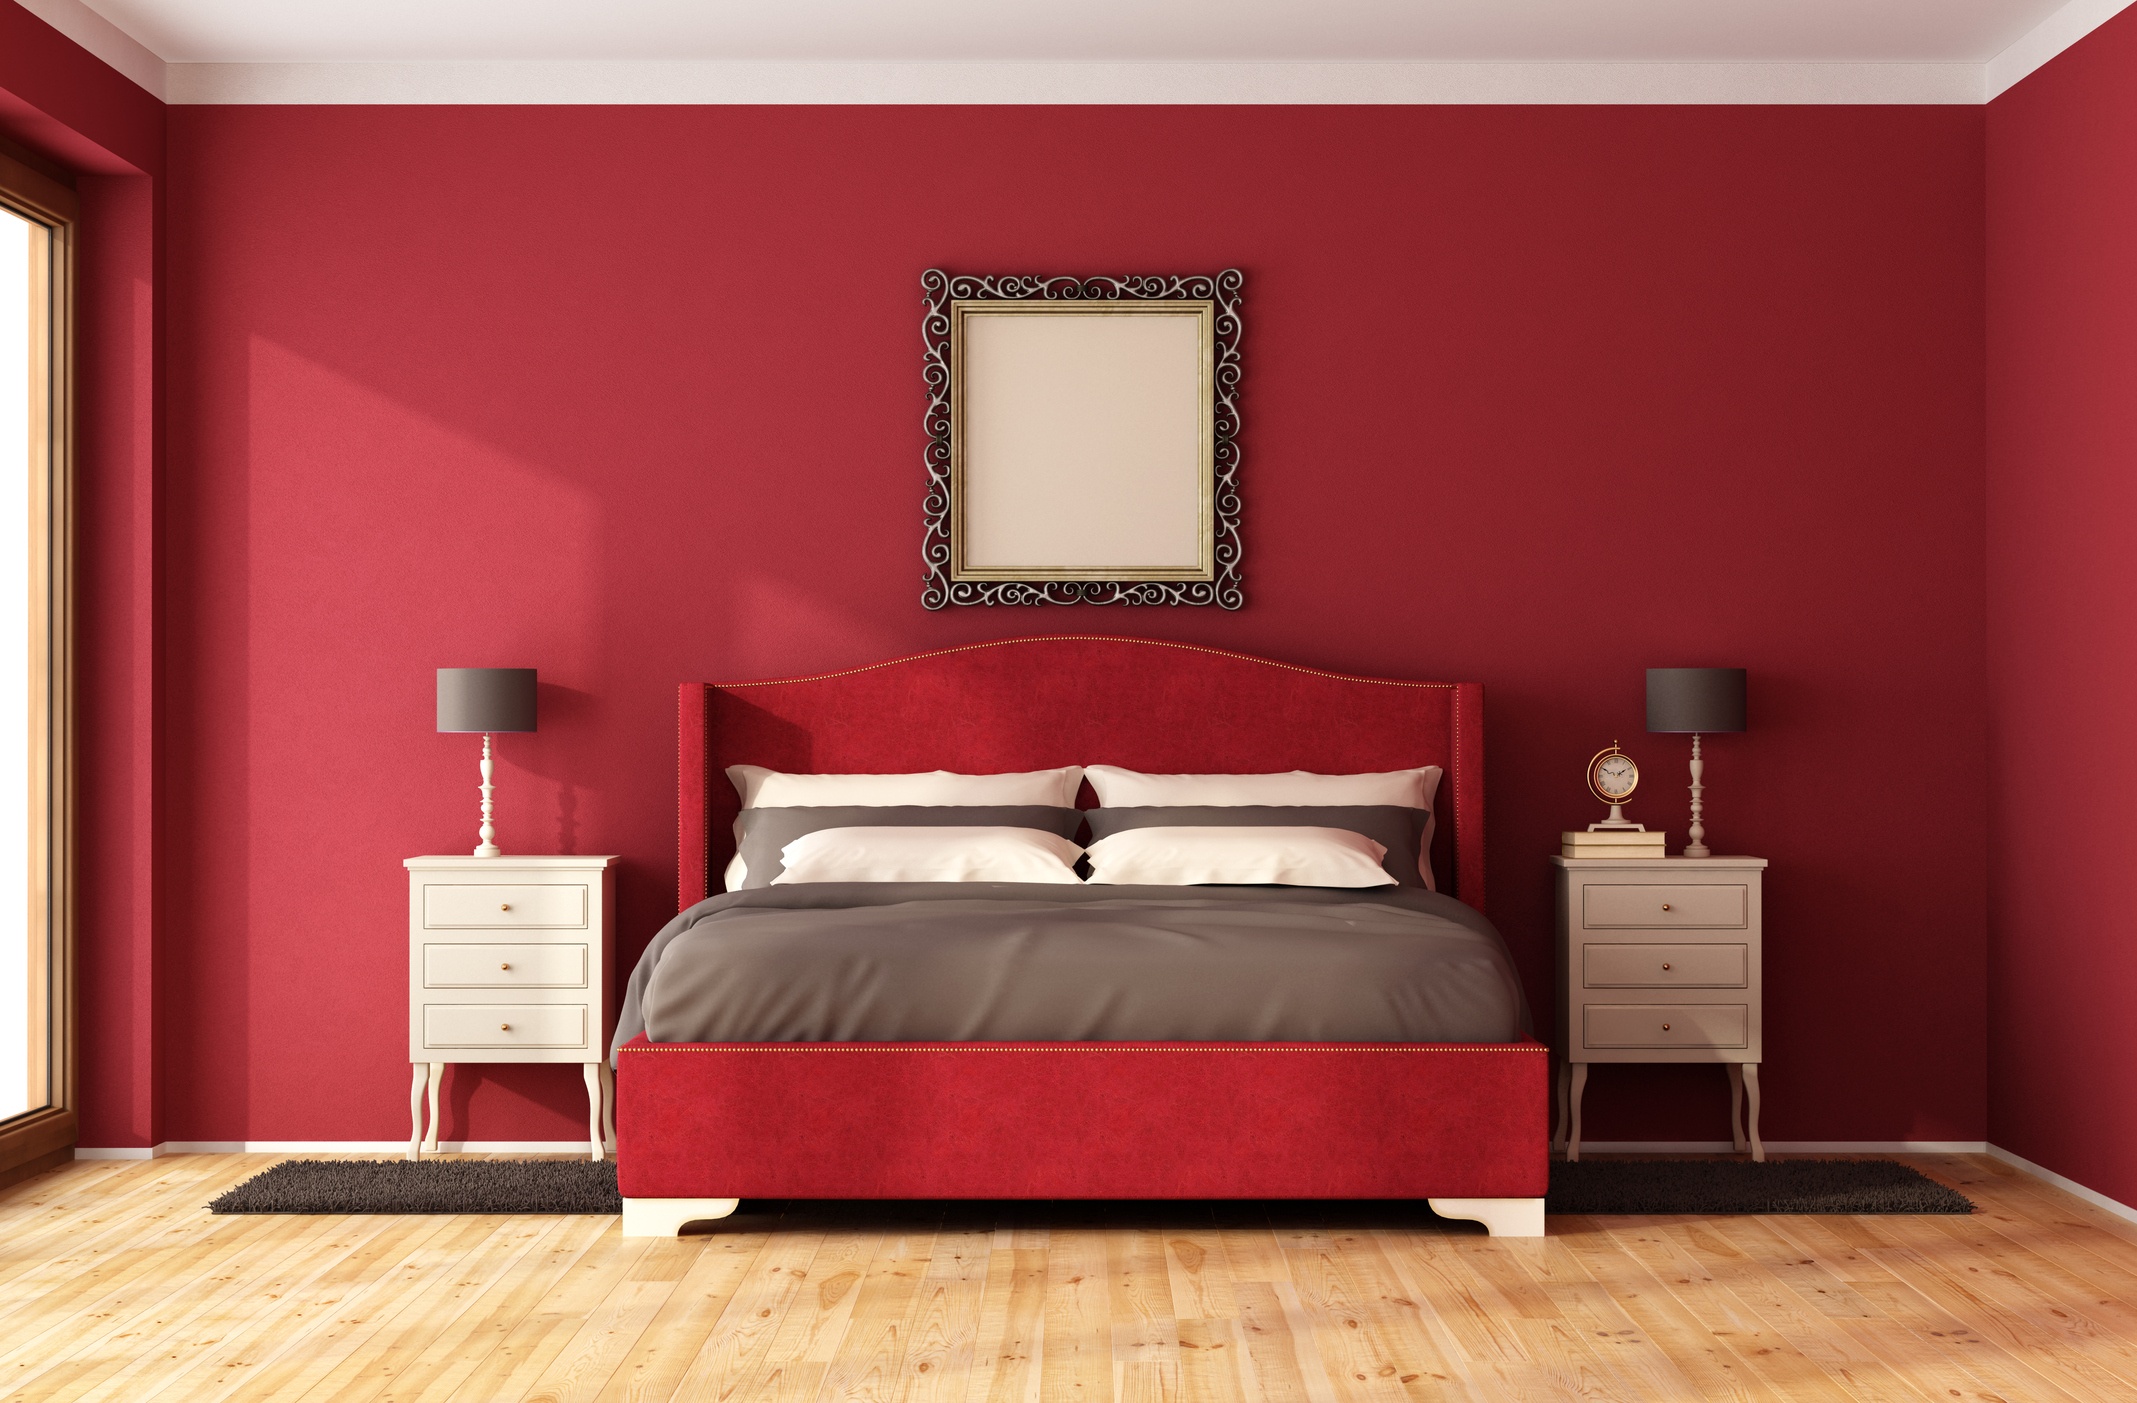 أسوء ألوان غرف النوم- اللون الأحمر